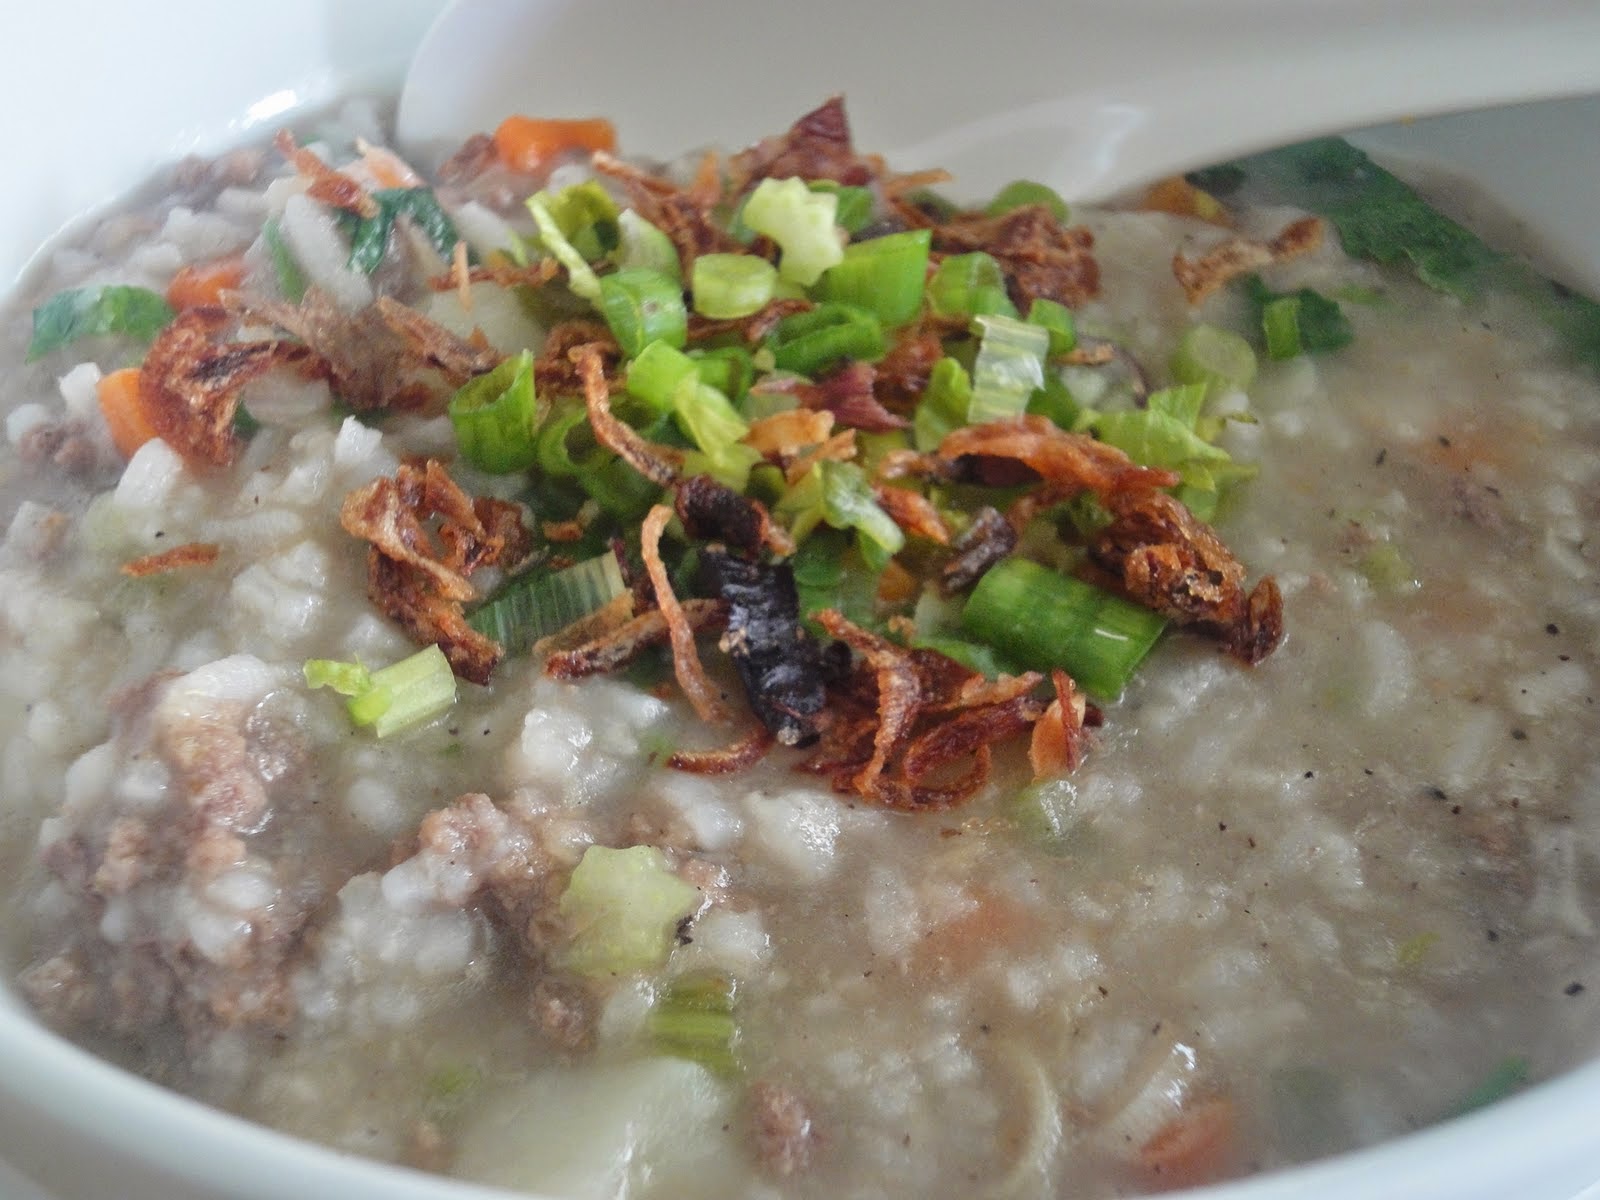 Resepi bubur nasi daging  Blog Masakan dan Minuman Paling Popular di